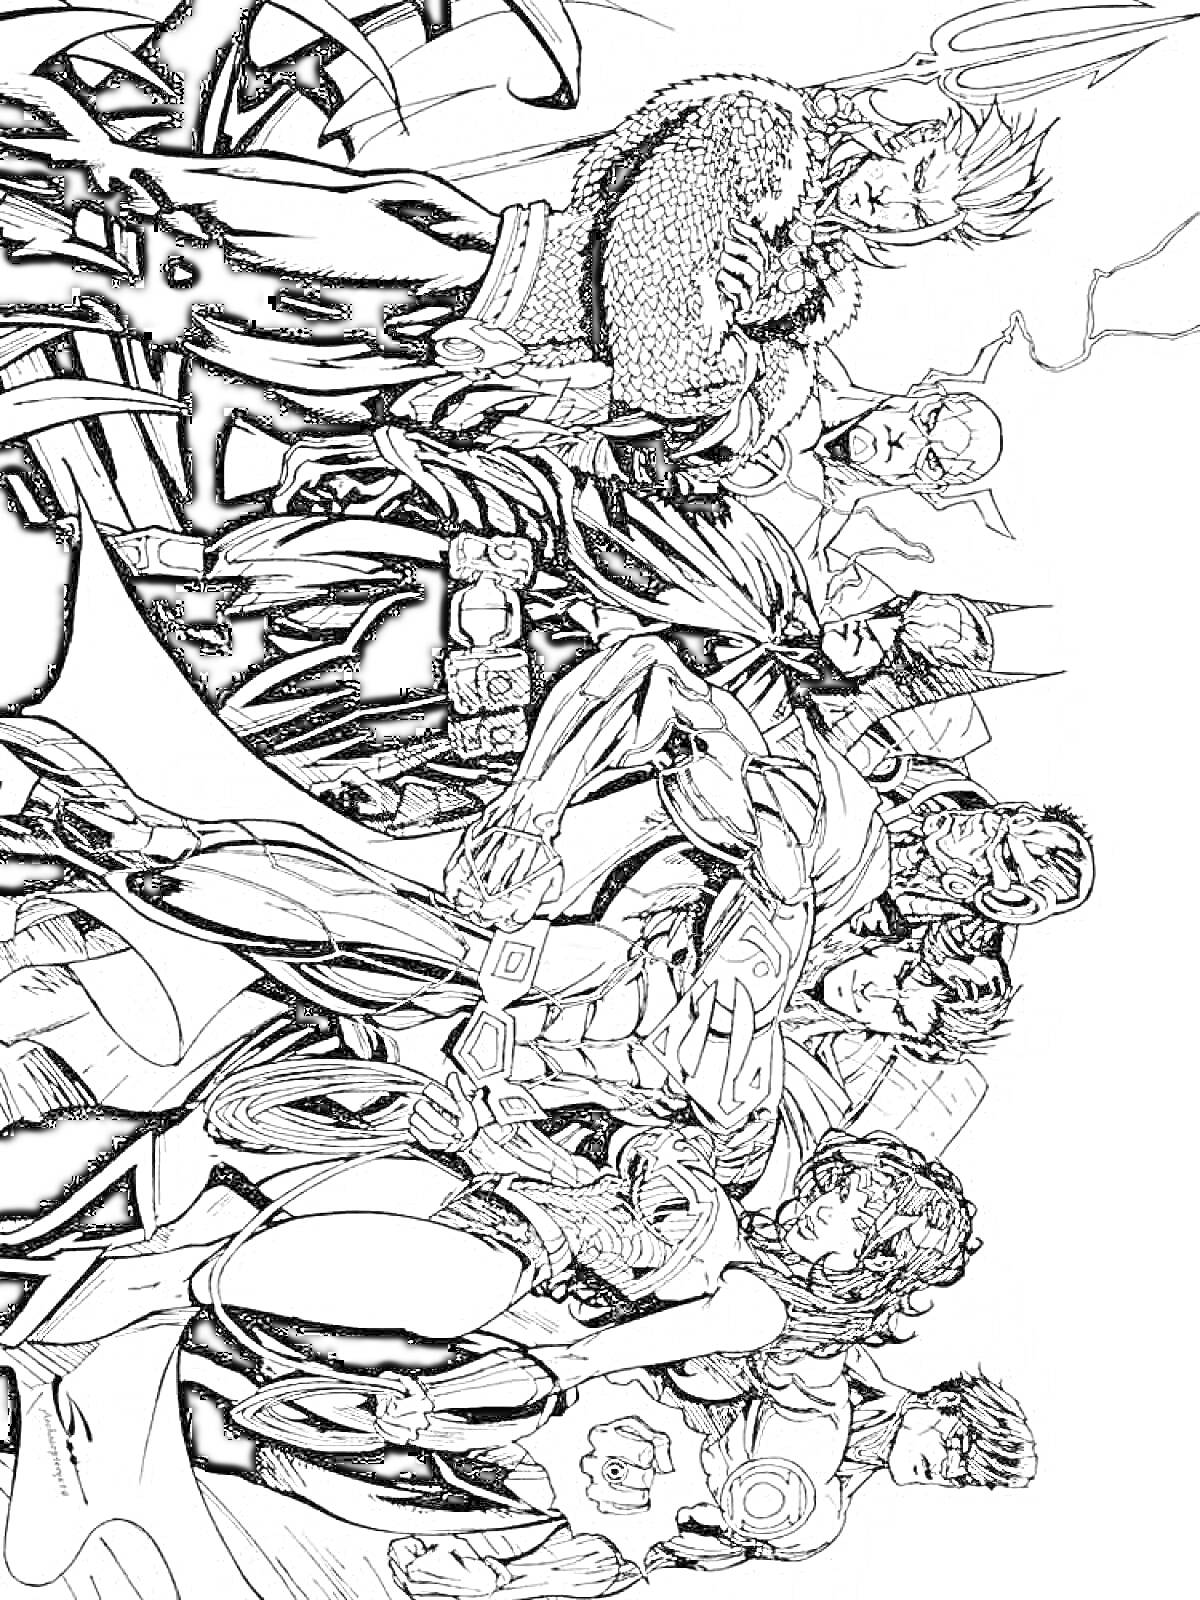 Герои Лиги Справедливости - супергерои в костюмах, расположенные в ряд